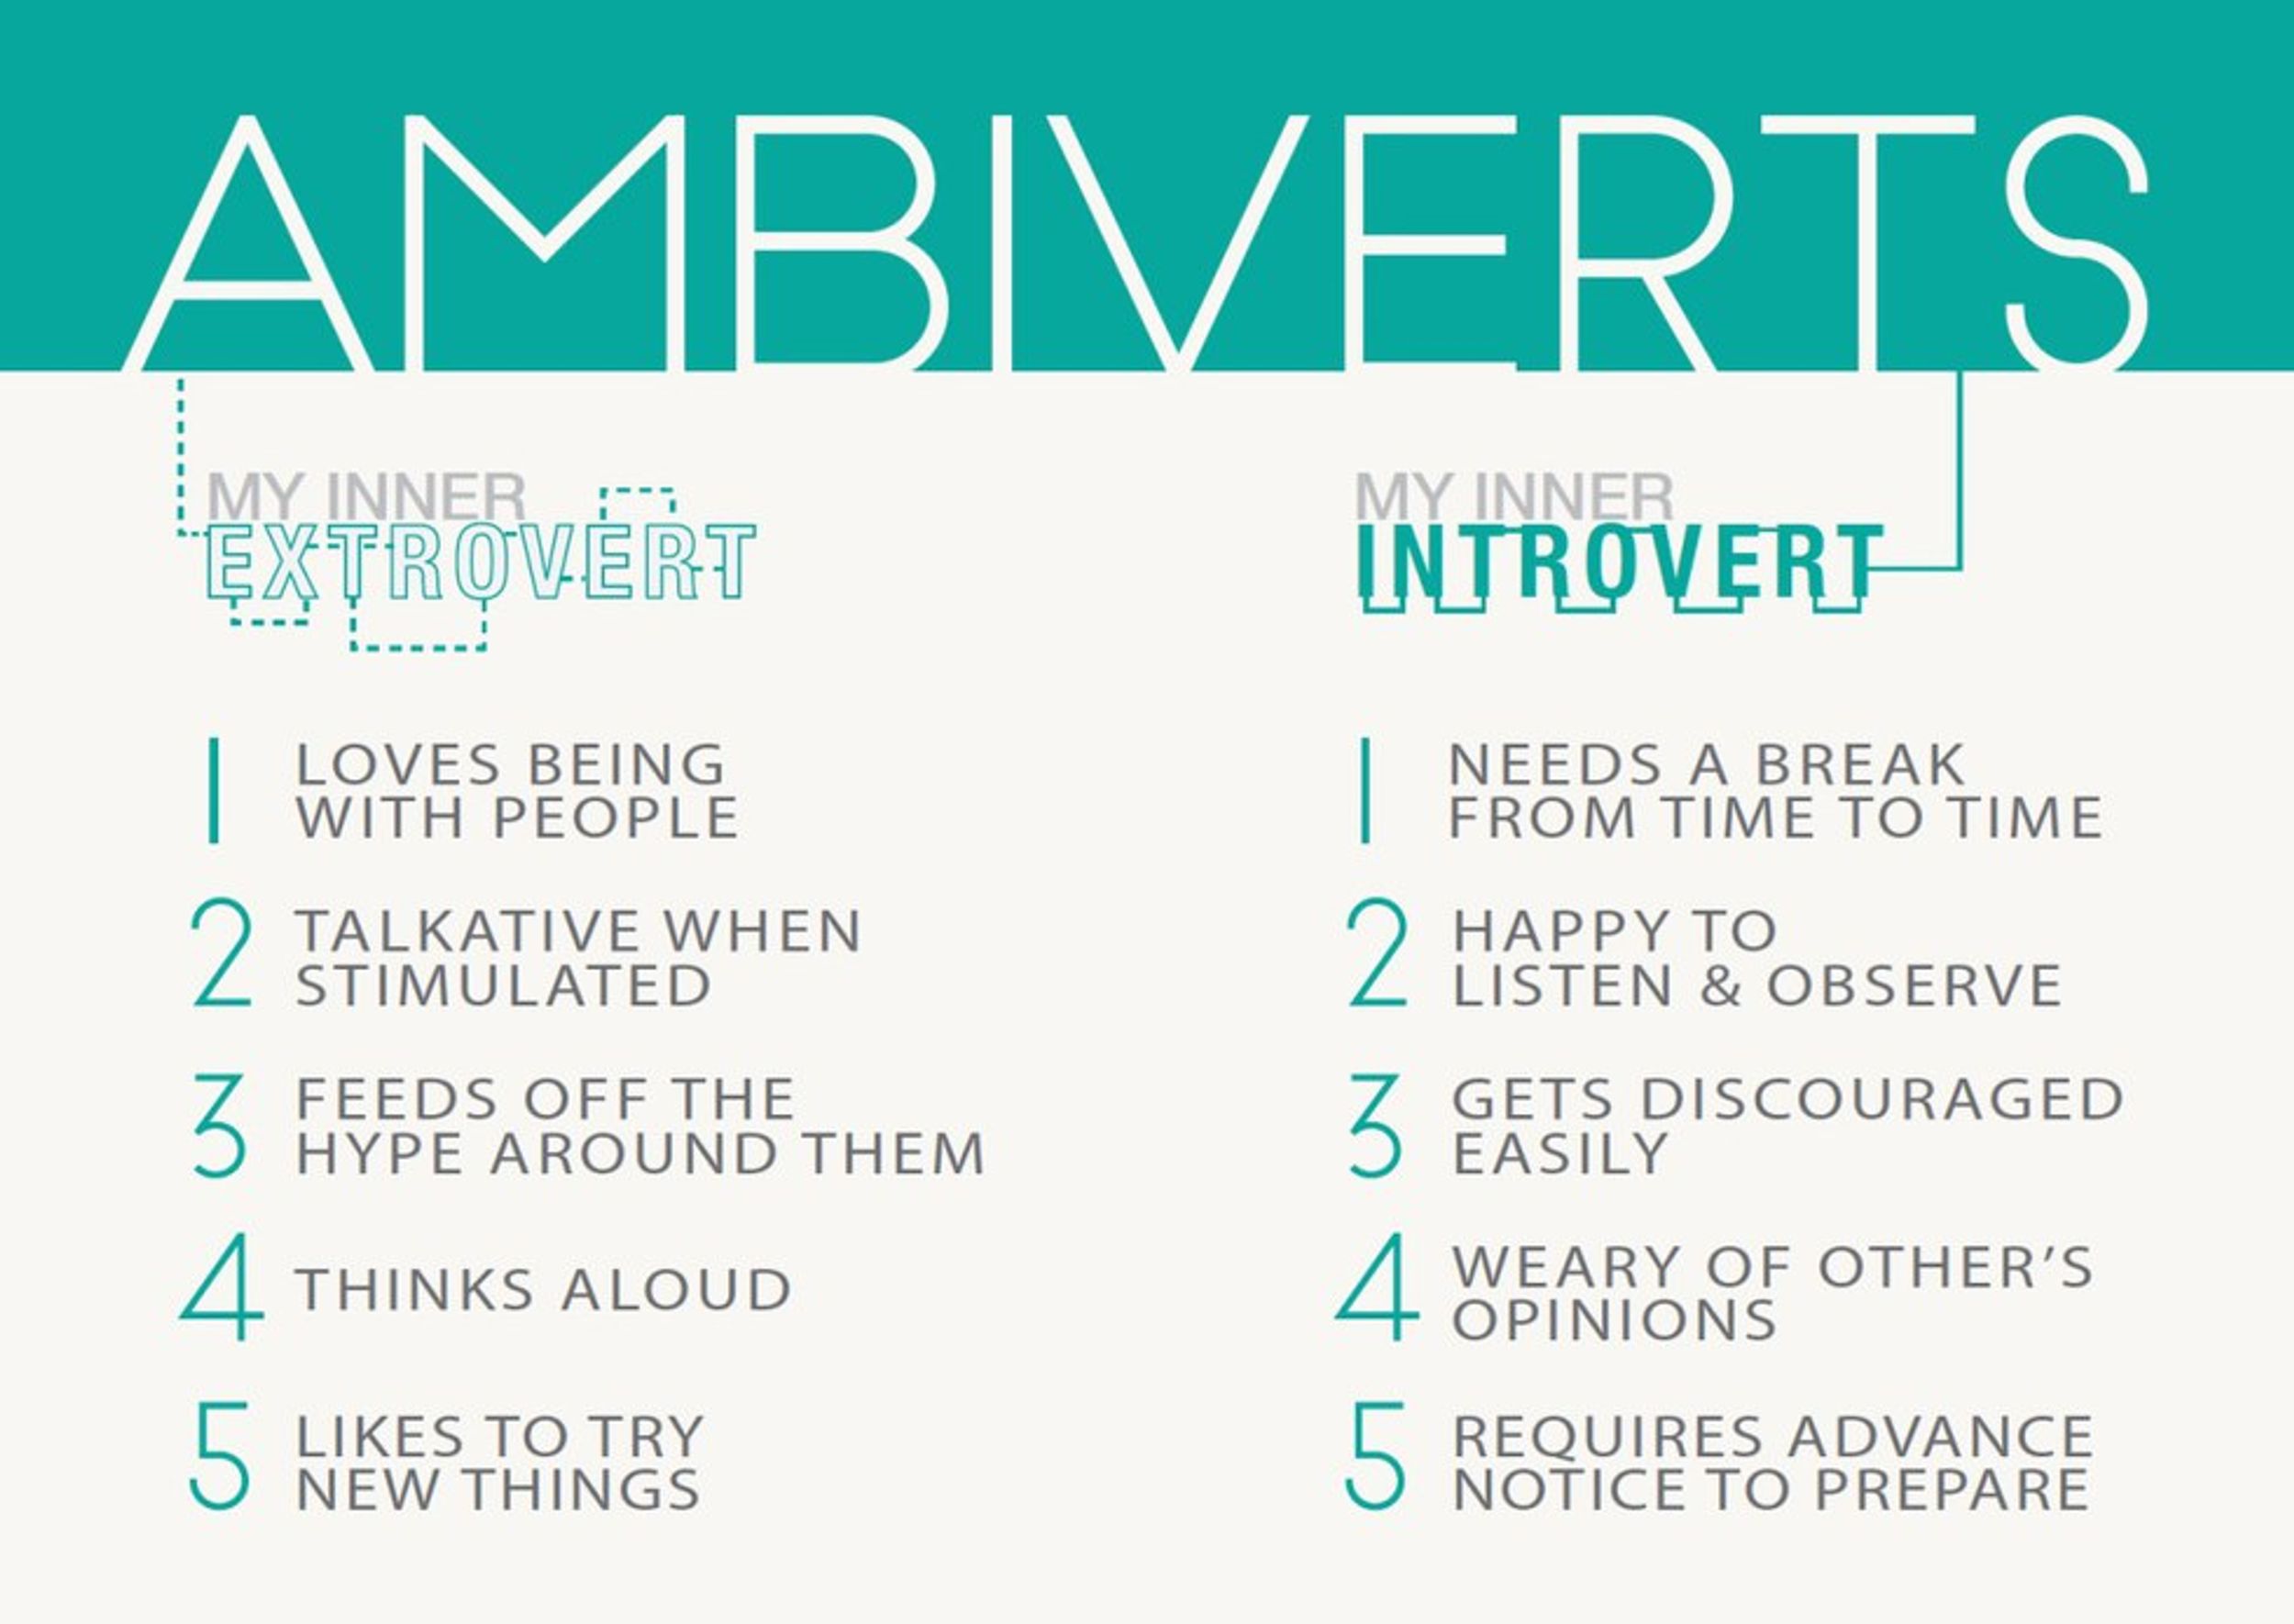 I'm an Ambivert